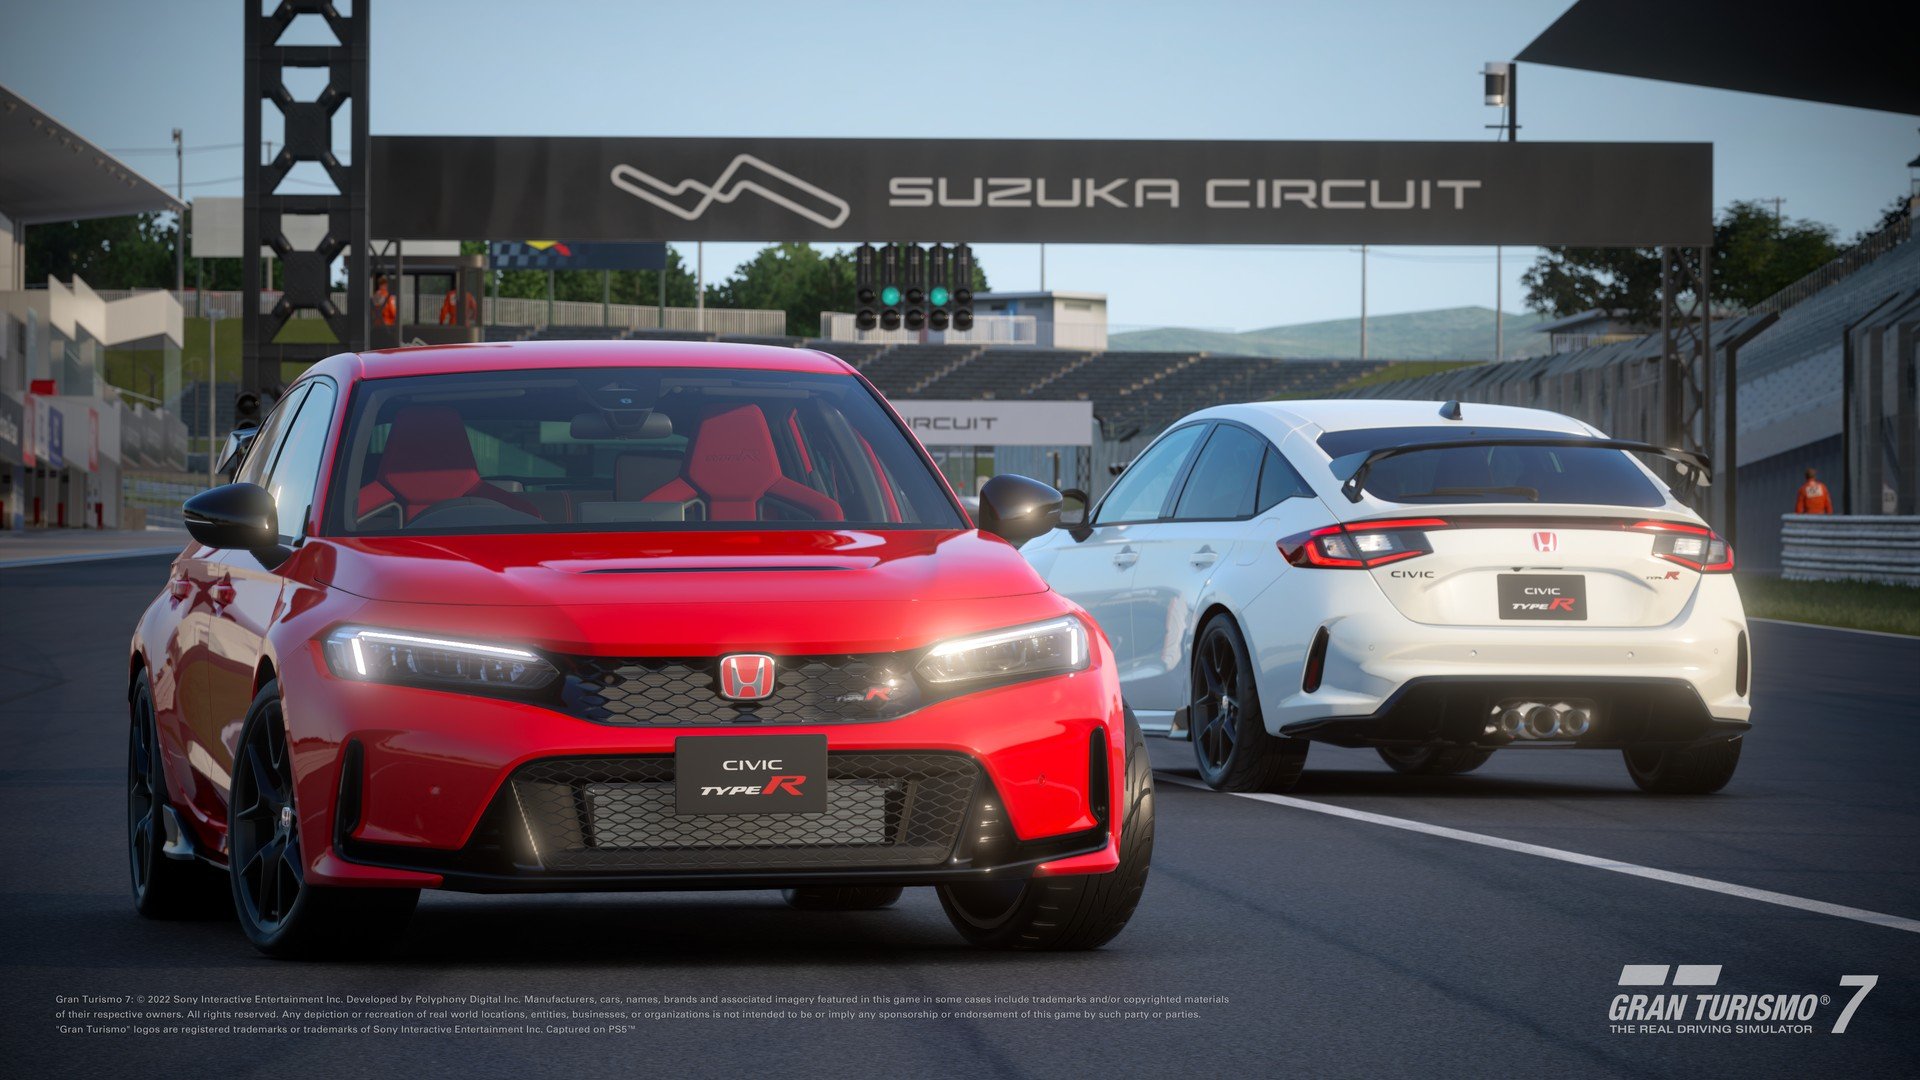 More information about "Gran Turismo 7: aggiornamento 1.38 con tre nuove auto, evento Honda Racing eMS 2023"